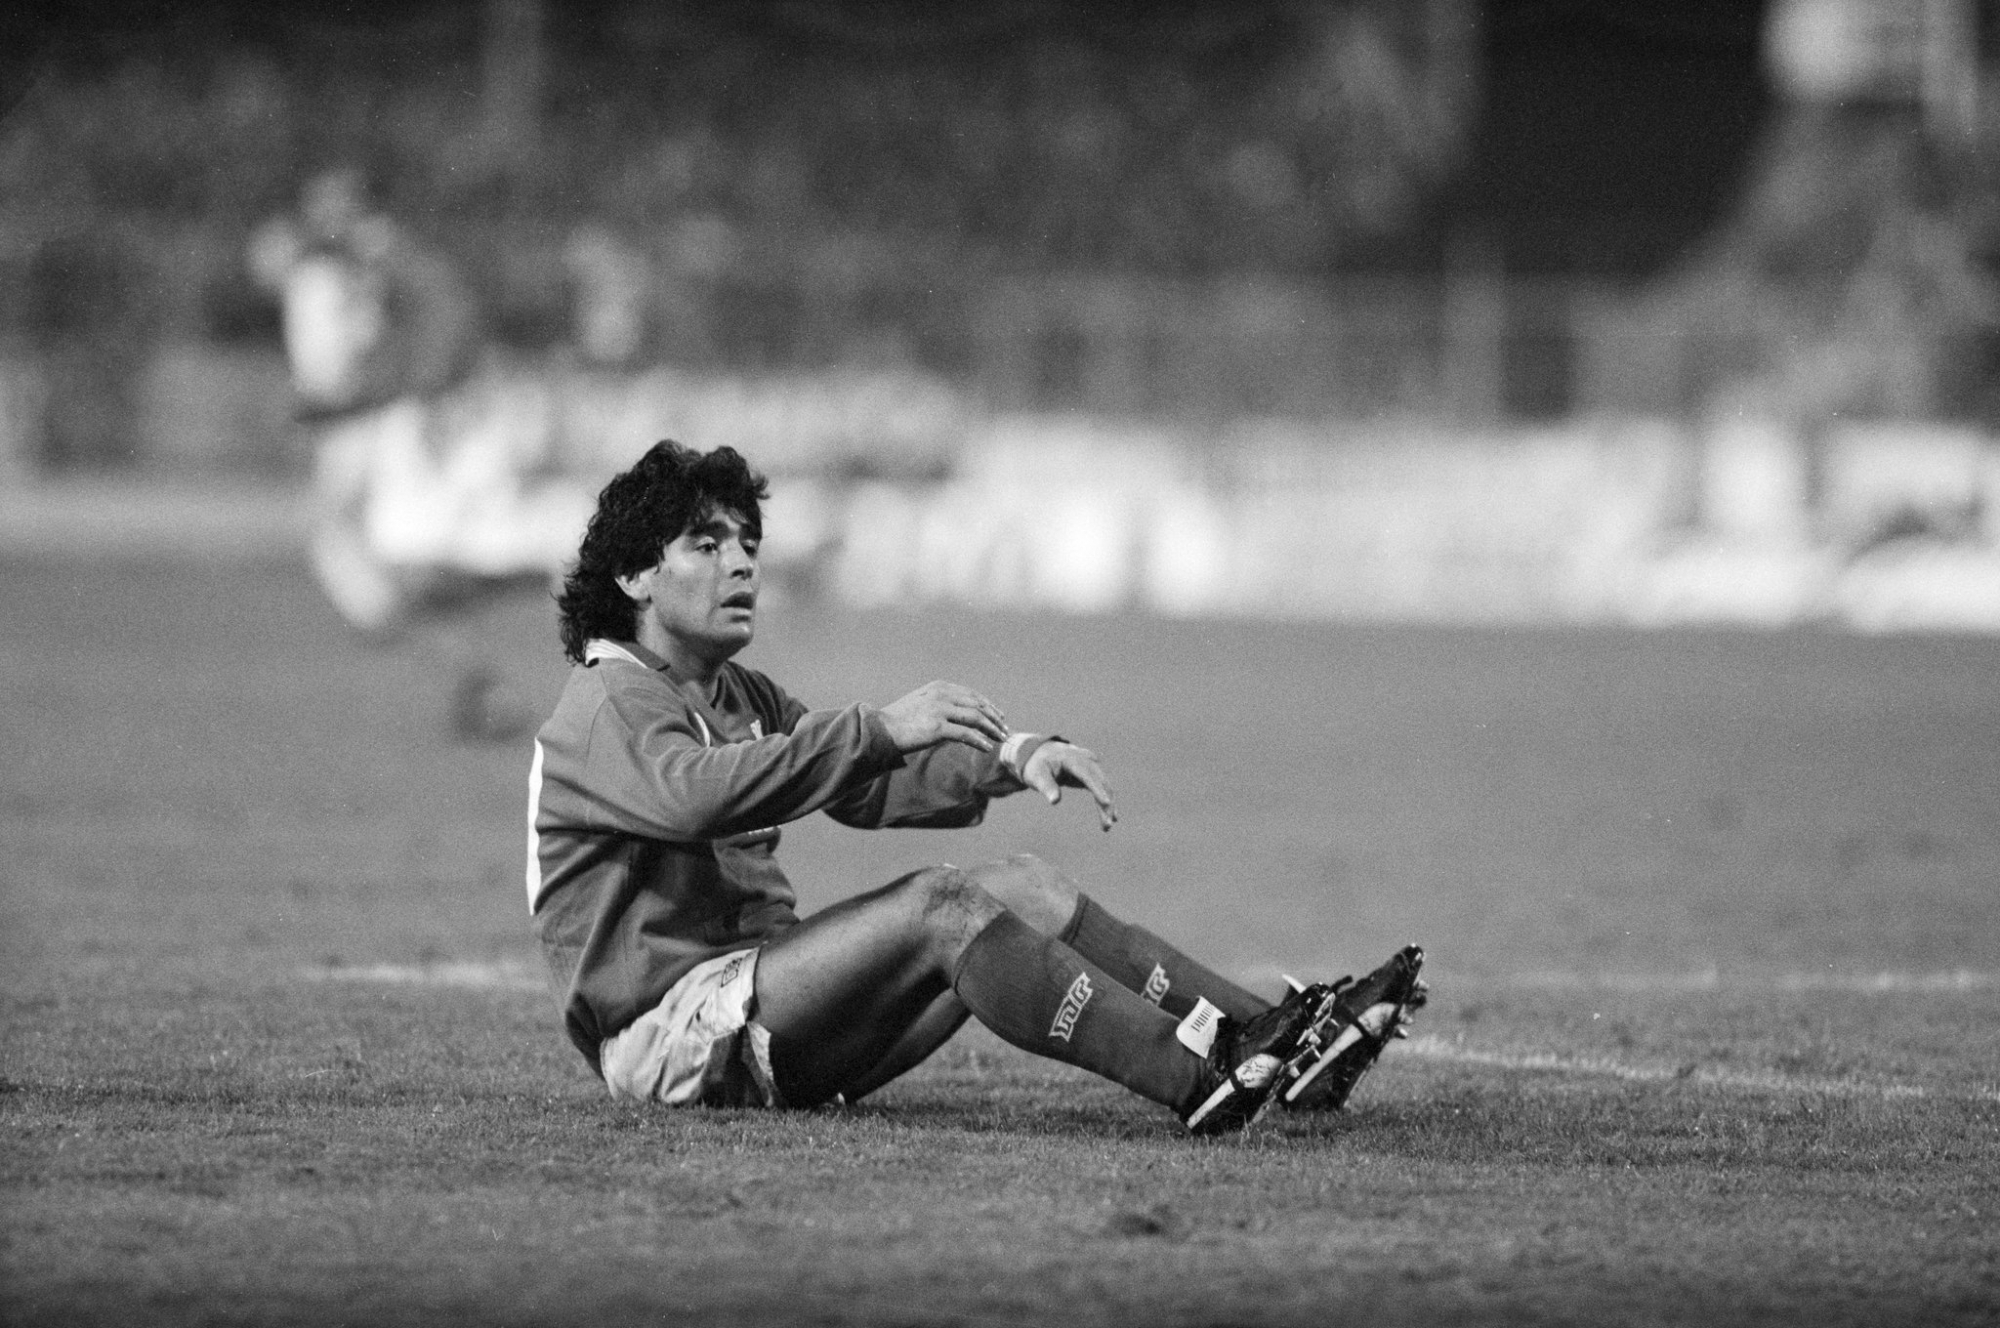 Diego Maradona est au sol après avoir subi une faute lors d'une rencontre de Coupe UEFA (désormais Europa League) entre Naples et Wettingen. Stade du Letzigrund, Zurich, le 17 octobre 1989.